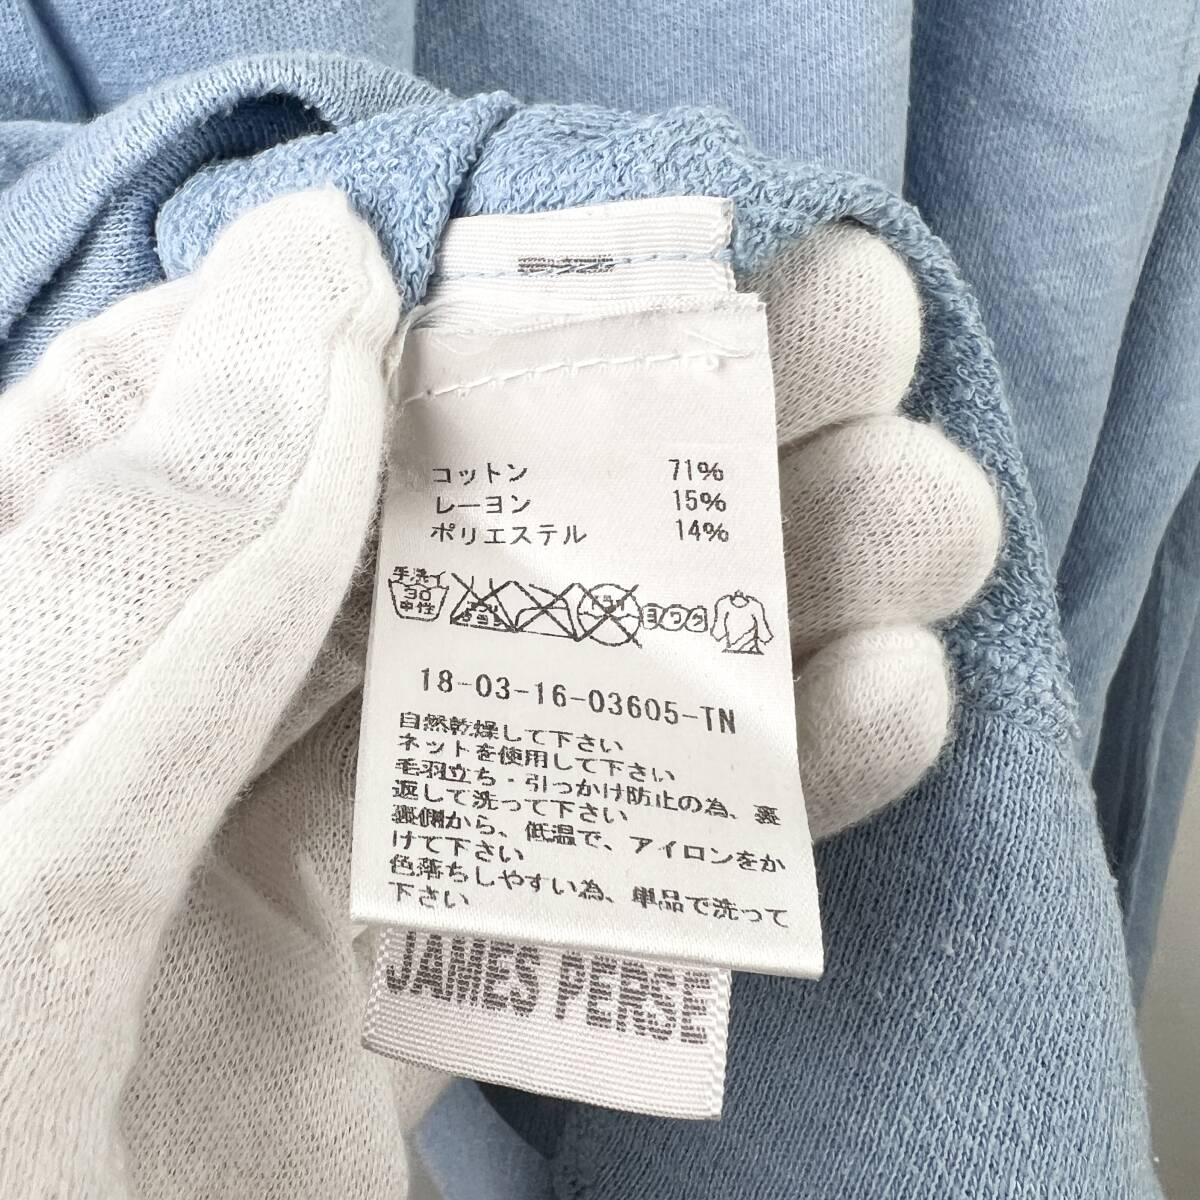 JAMESPERSE(ジェームスパース) Cotton Rayon Polyester Longsleeve T Shirt (blue)